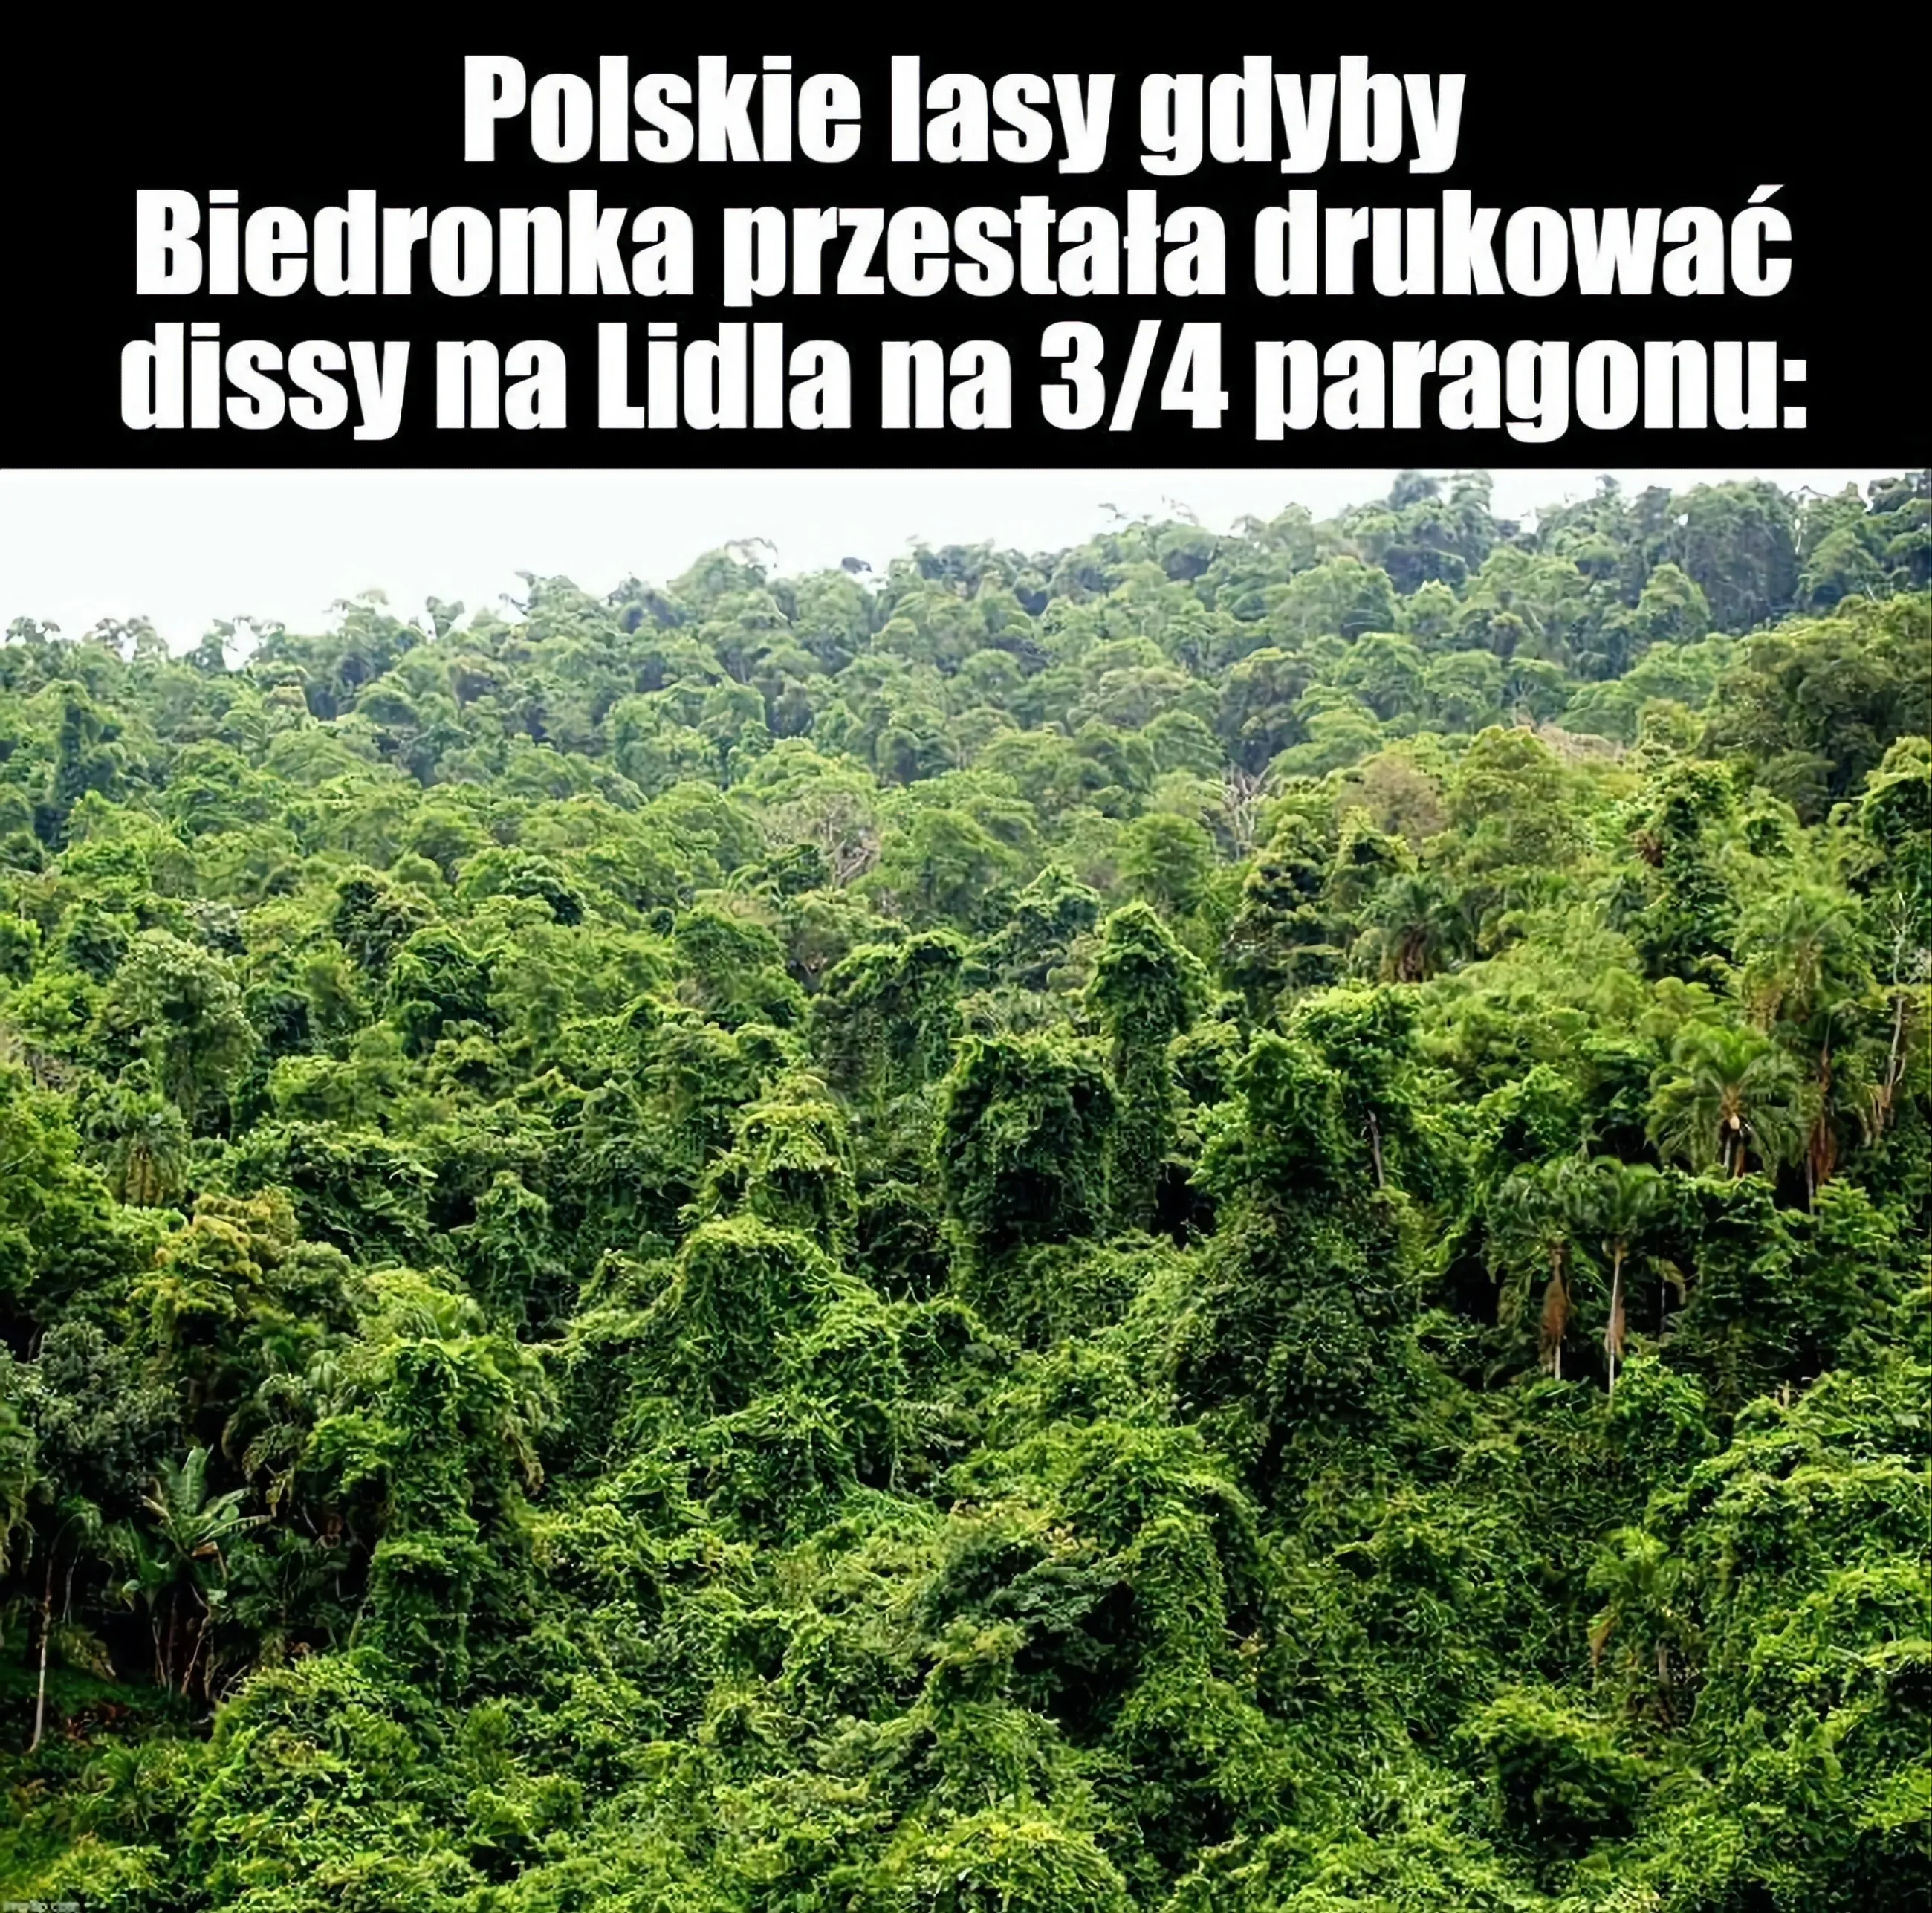 Mem przedstawiający zdjęcie pięknych i zielonych lasów: 'Polskie lasy gdyby Biedronka przestała drukować dissy na Lidla na 3/4 paragonu'